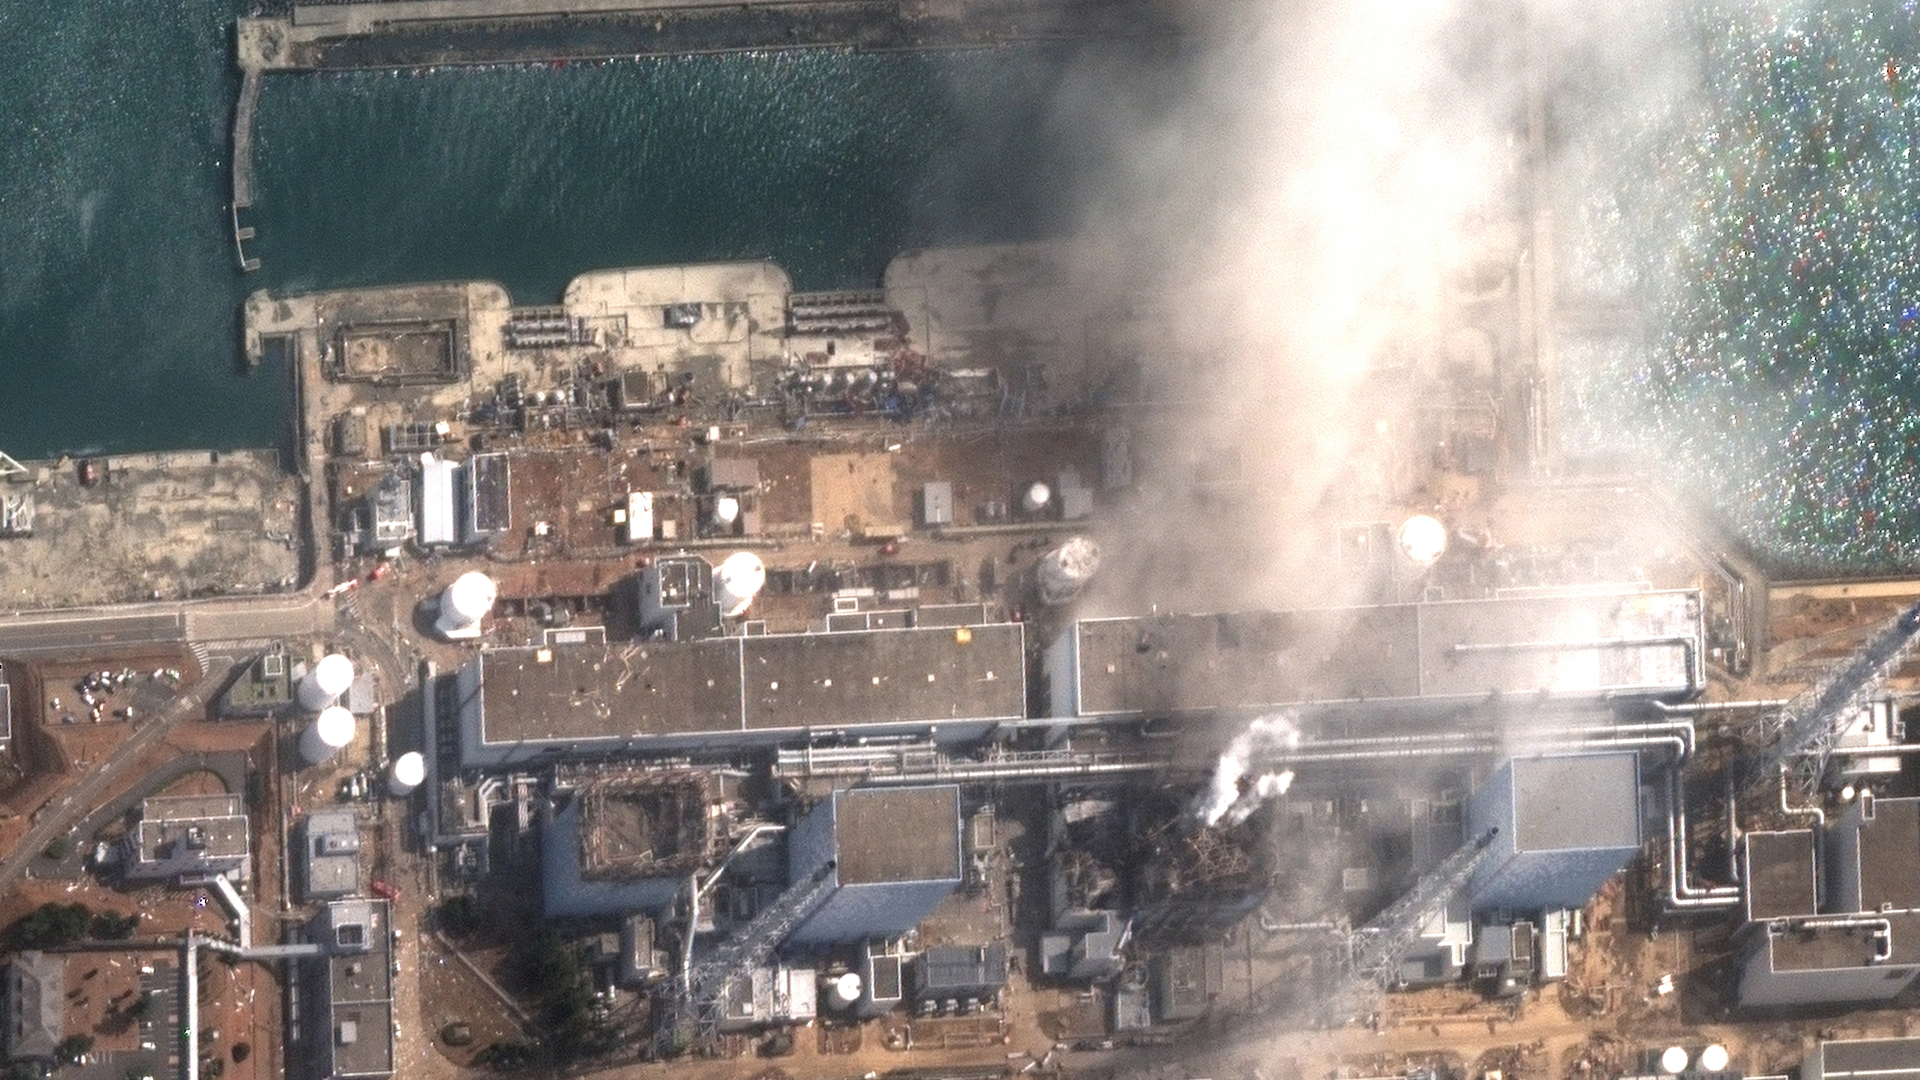 Satellitenaufnahme der Reaktorgebäude von Fukushima, über die nach mehreren Explosionen im März 2011 Rauch aufsteigt | dpa